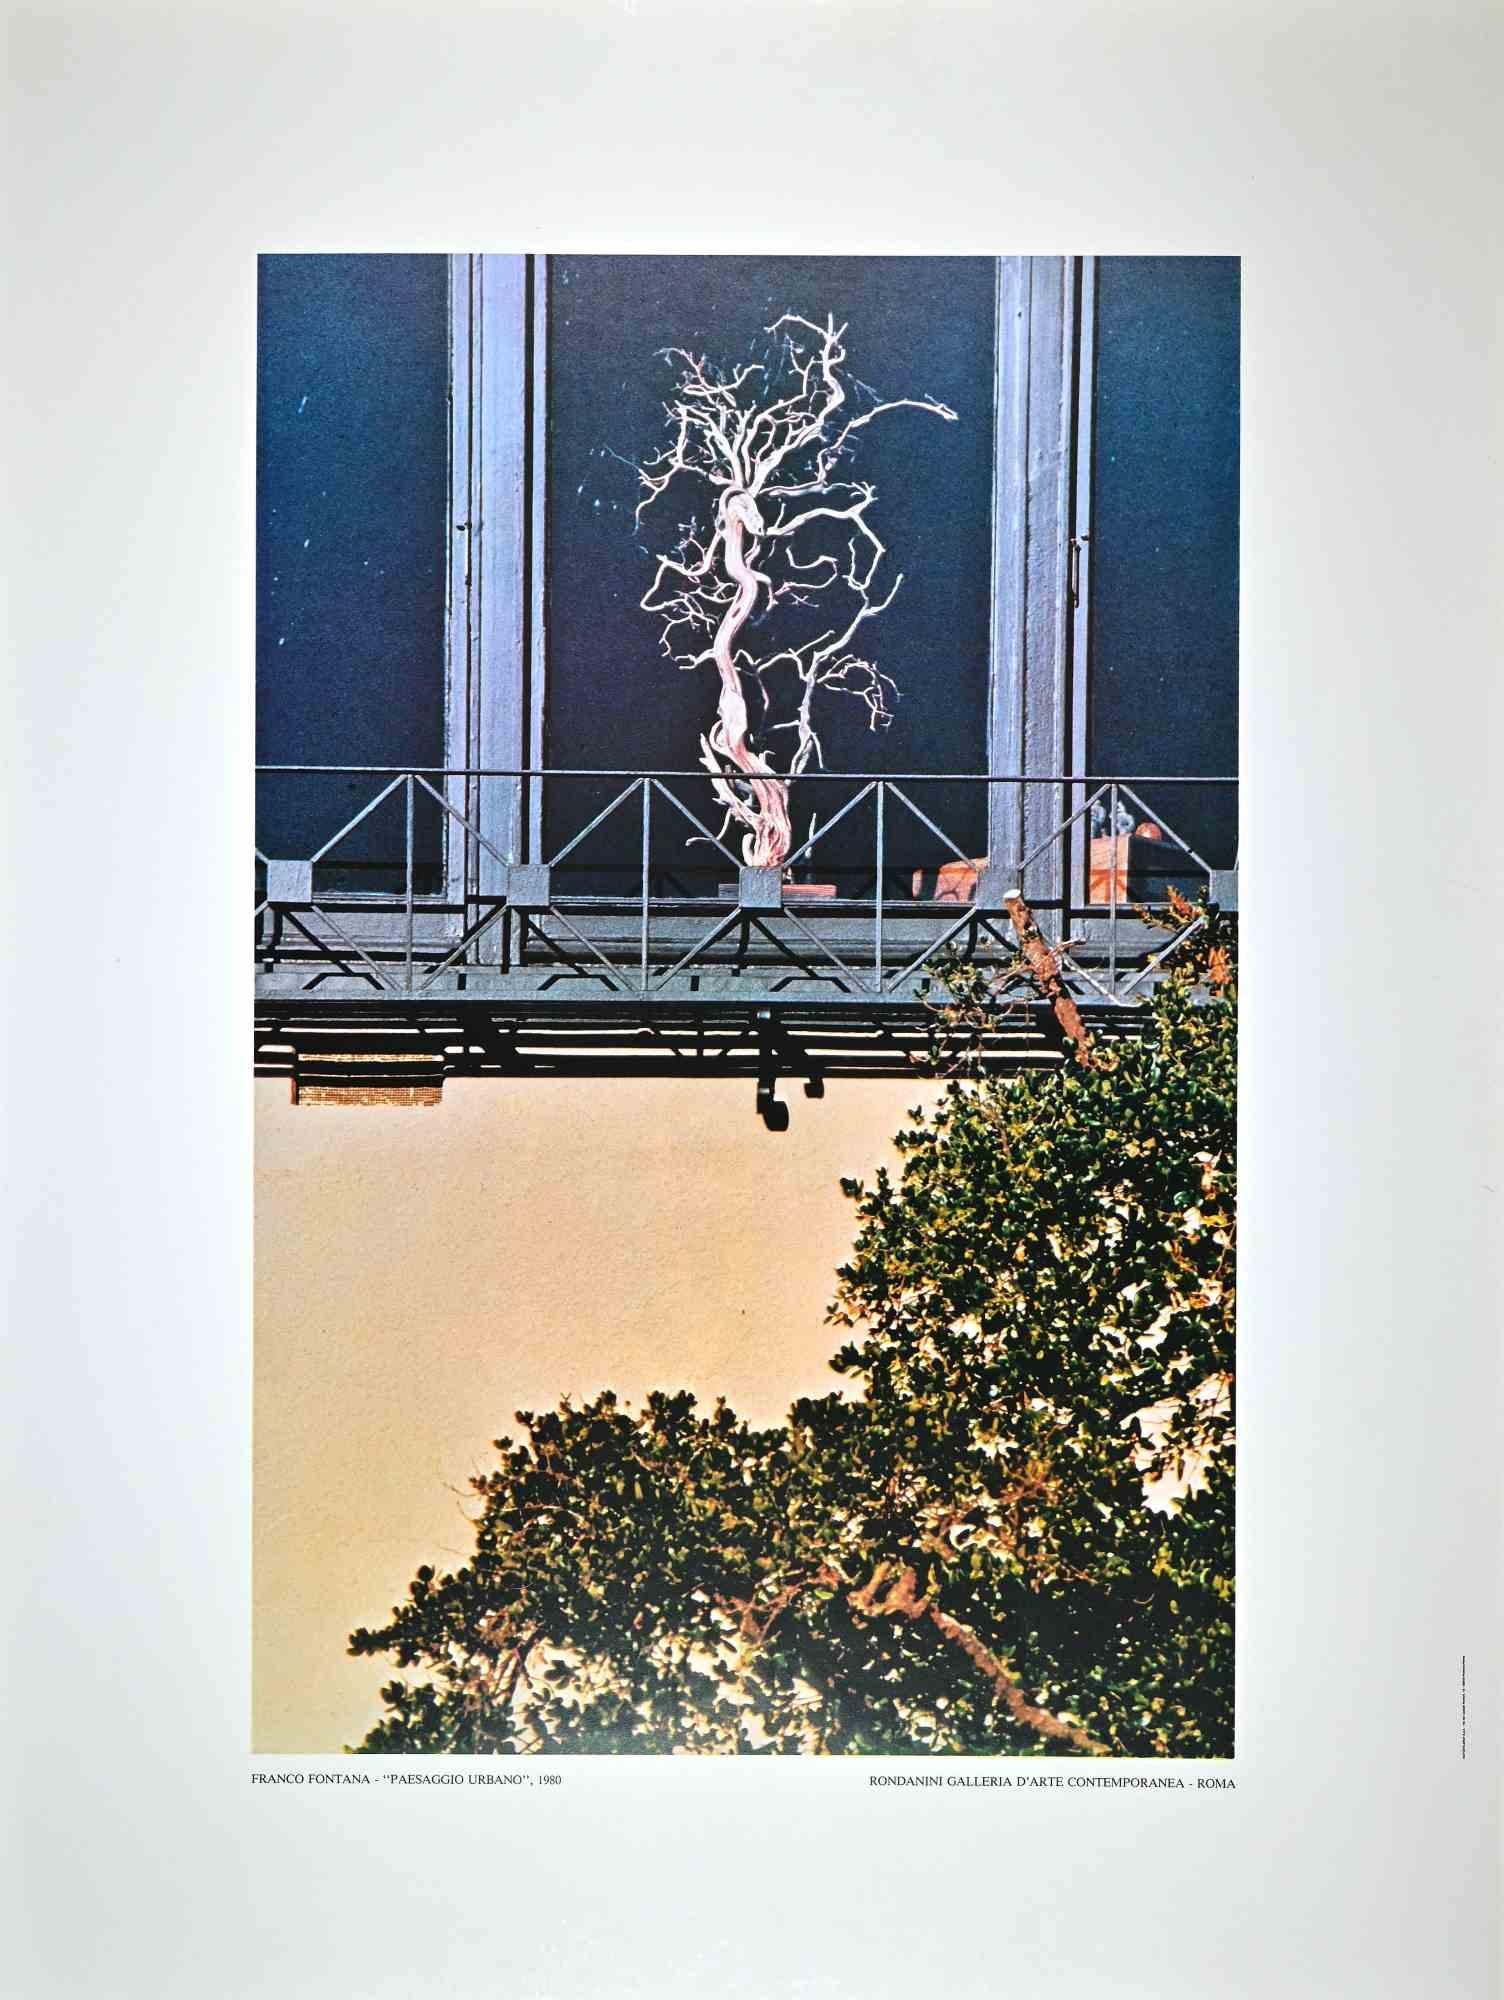 Paysage urbain vintage - Affiche offset de Franco Fontana - années 1980